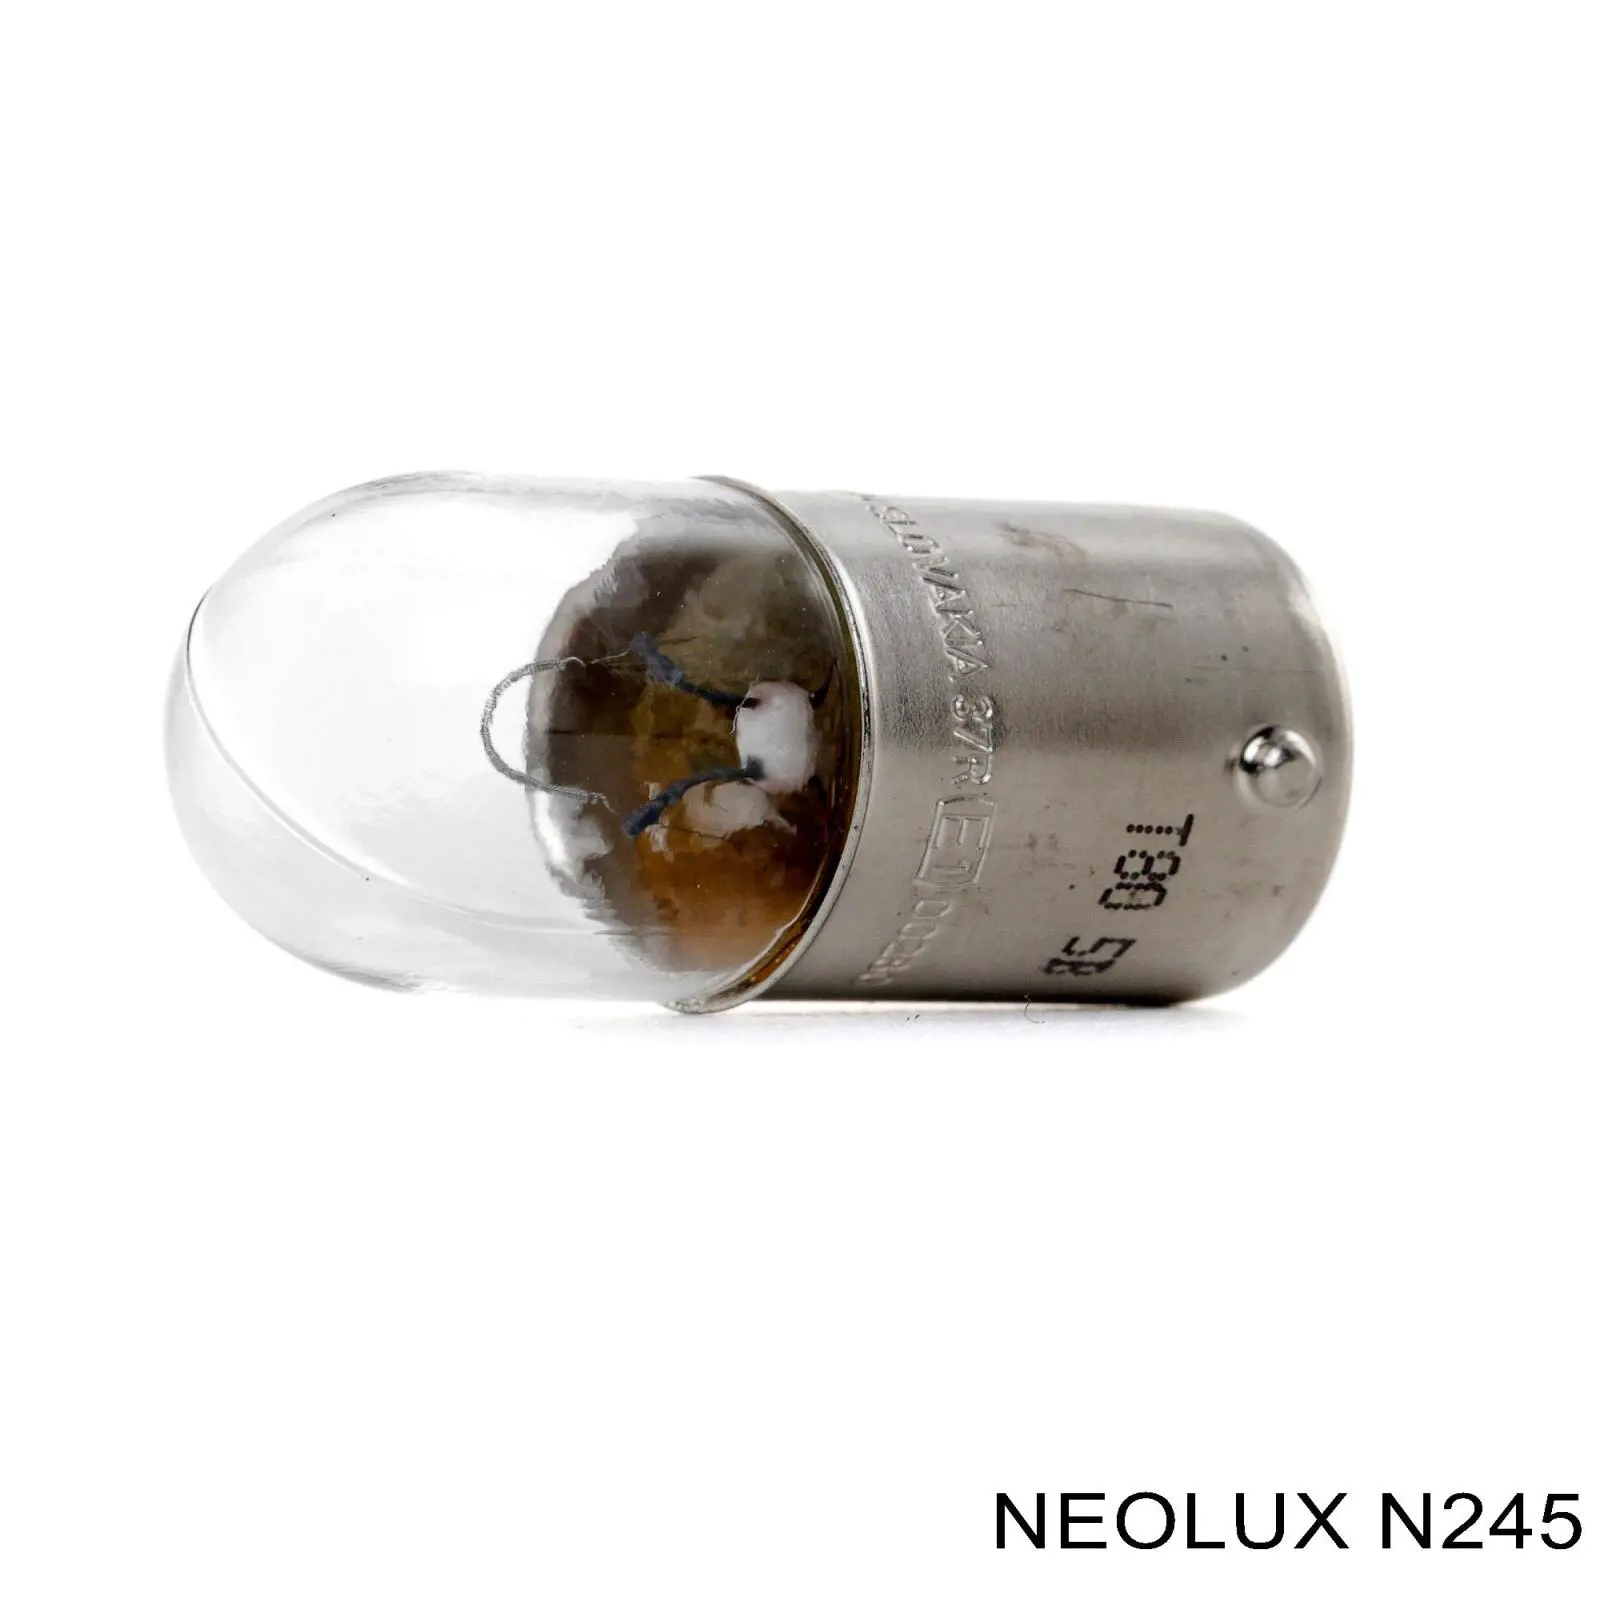 N245 Neolux lâmpada